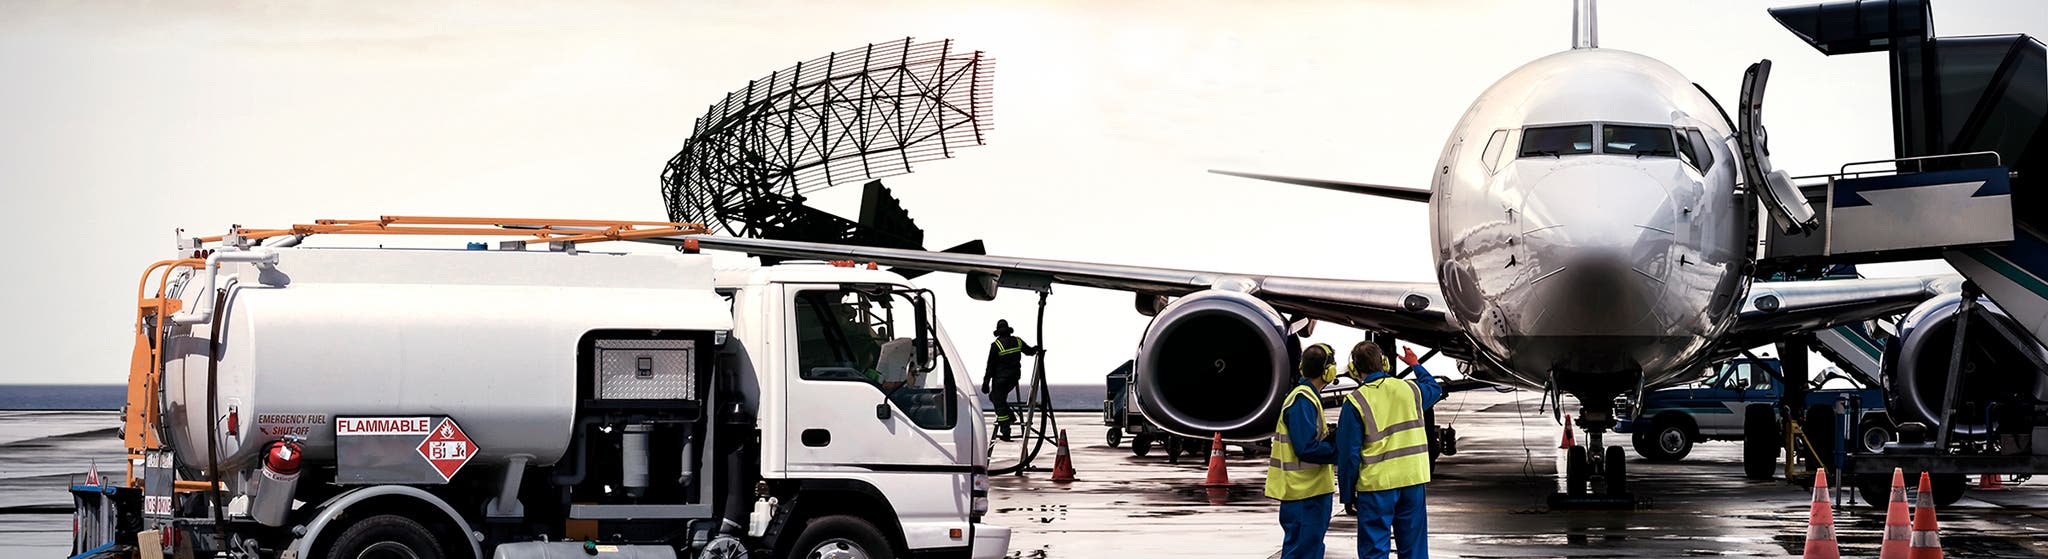 Image d’en-tête pour les applications aérospatiales, de transport et de logistique dédiées au système CombiTac